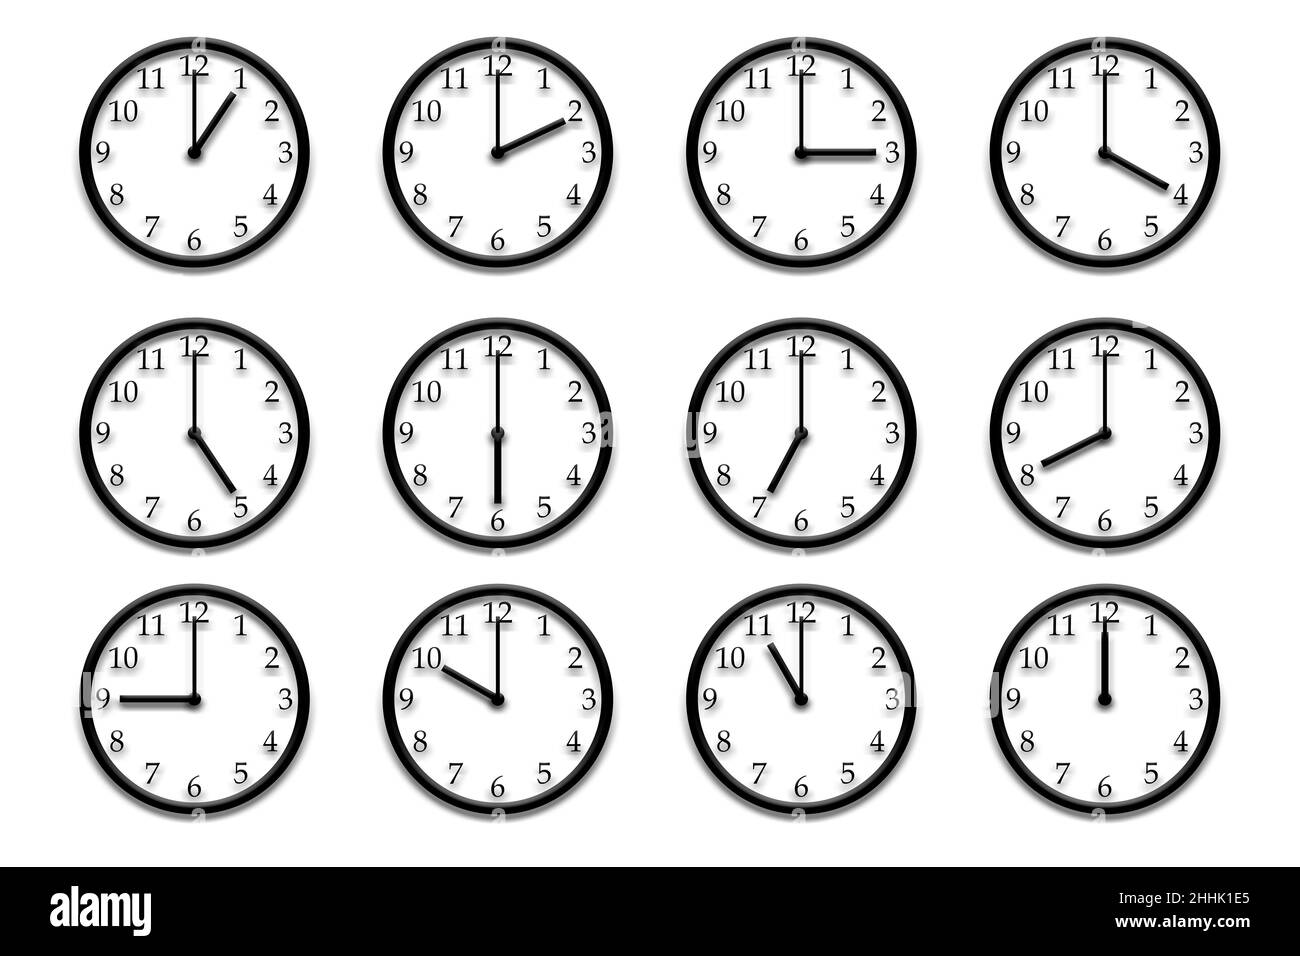 Dodici orologi da parete in rilievo, ciascuno con un'ora intera diversa del giorno, 1-12. Per l'uso in altre illustrazioni. Foto Stock